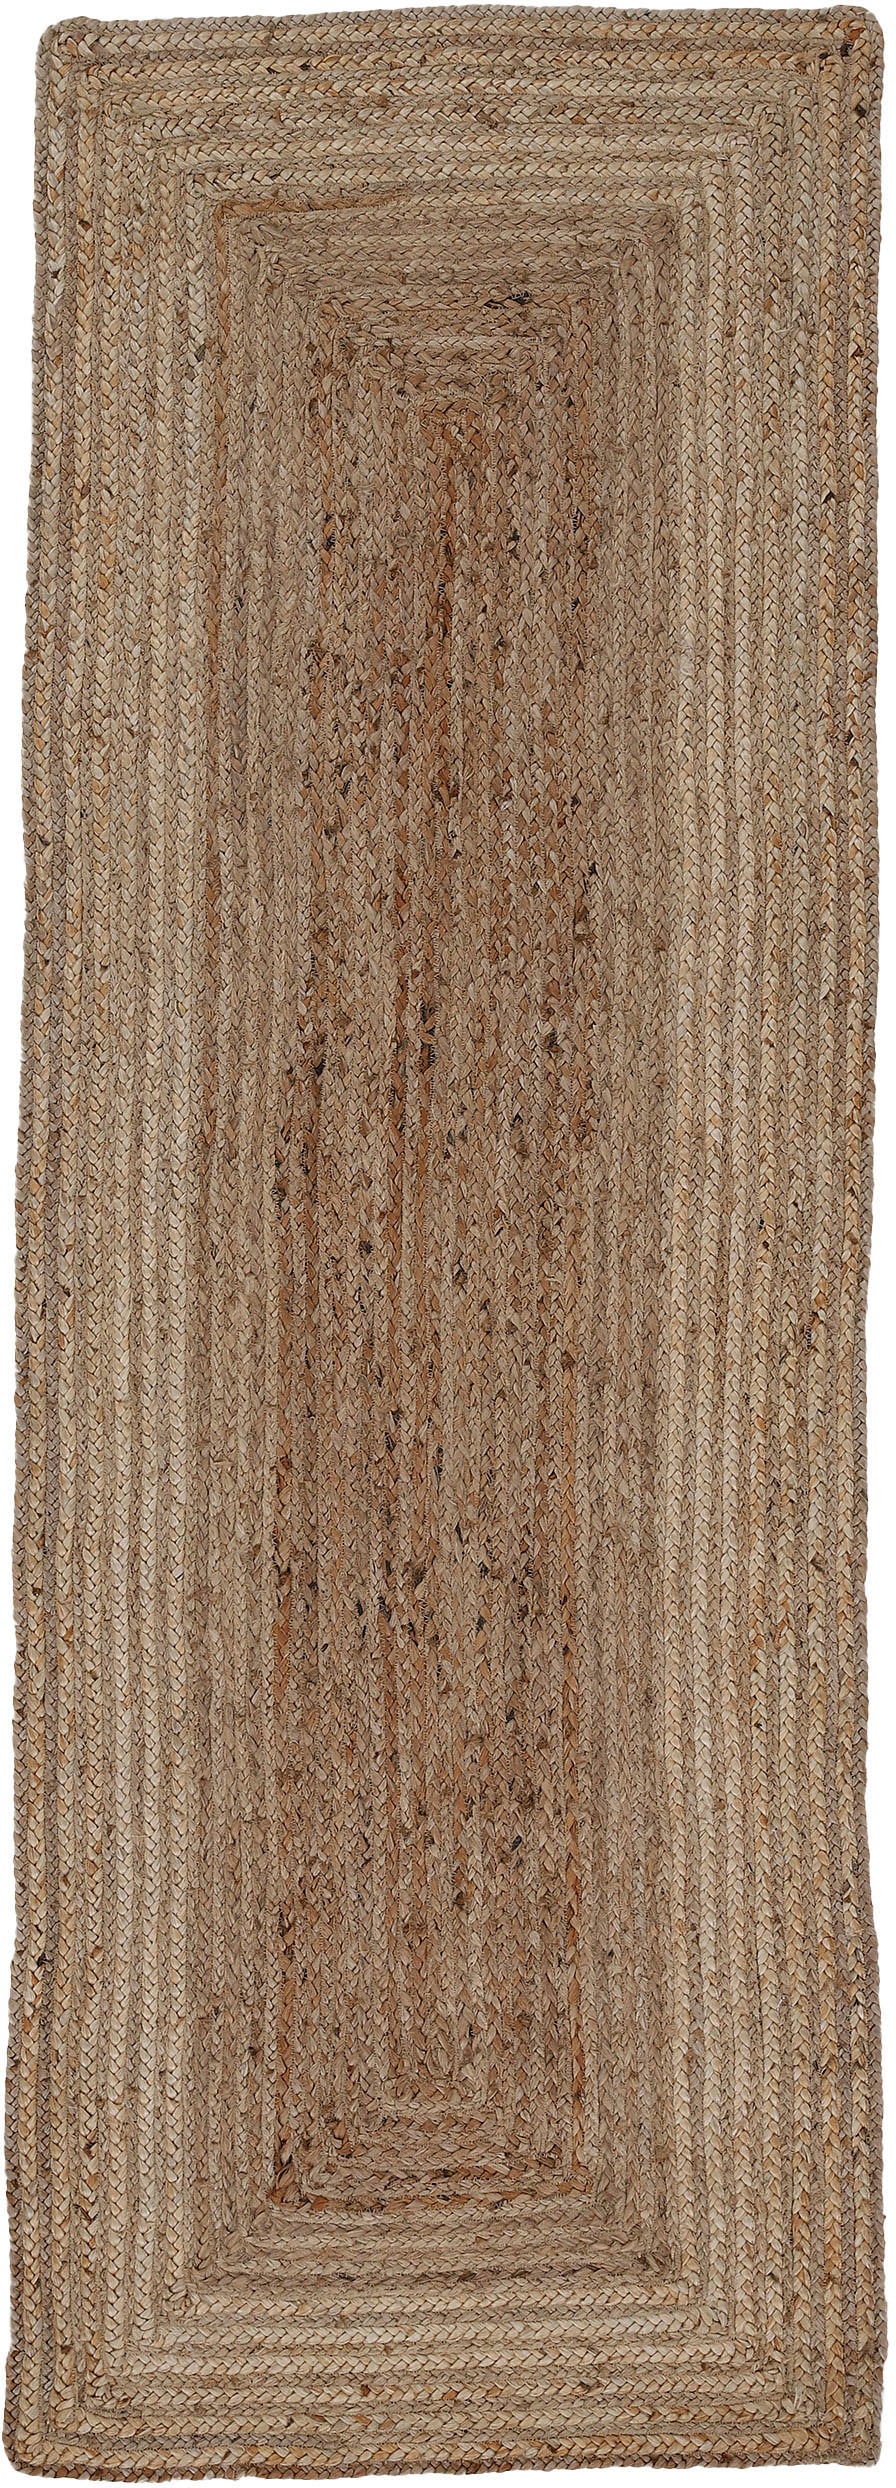 carpetfine Teppich "Nele Juteteppich Naturfaser", rechteckig, geflochtener Wendeteppich aus 100% Jute, quadratisch und a